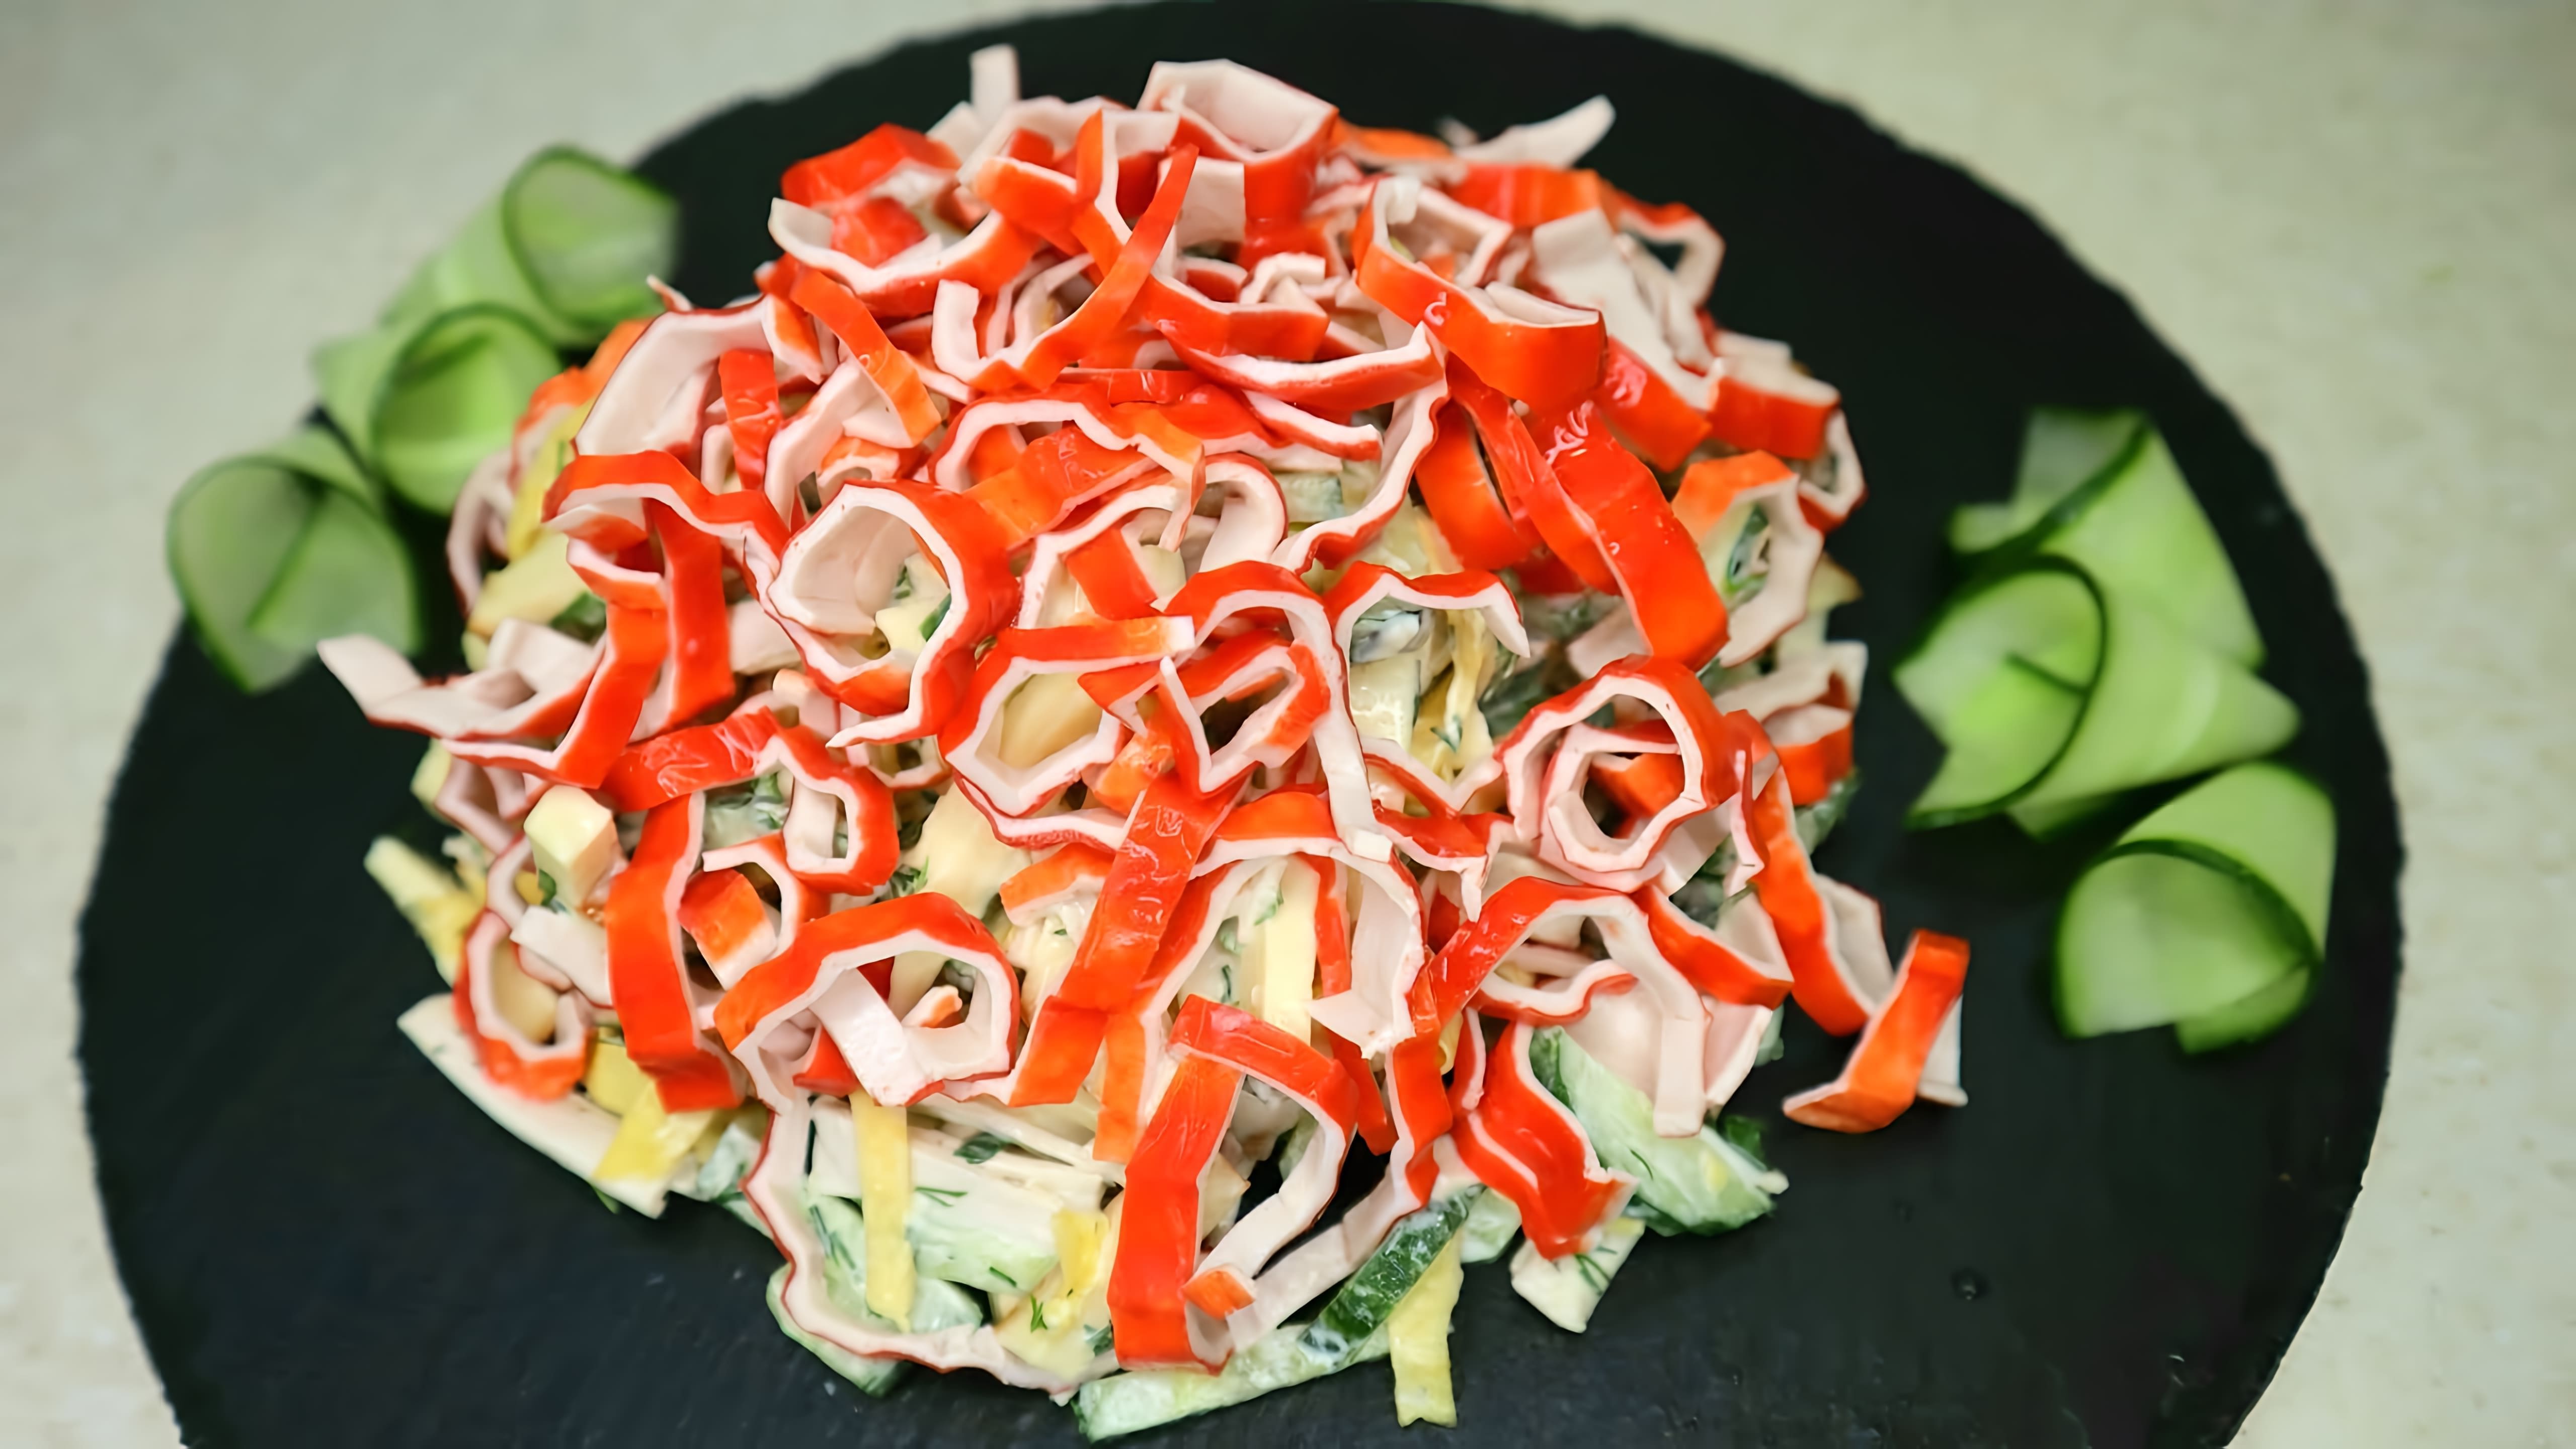 В этом видео демонстрируется рецепт салата с крабовыми палочками "Красная горка", который идеально подходит для праздничного стола